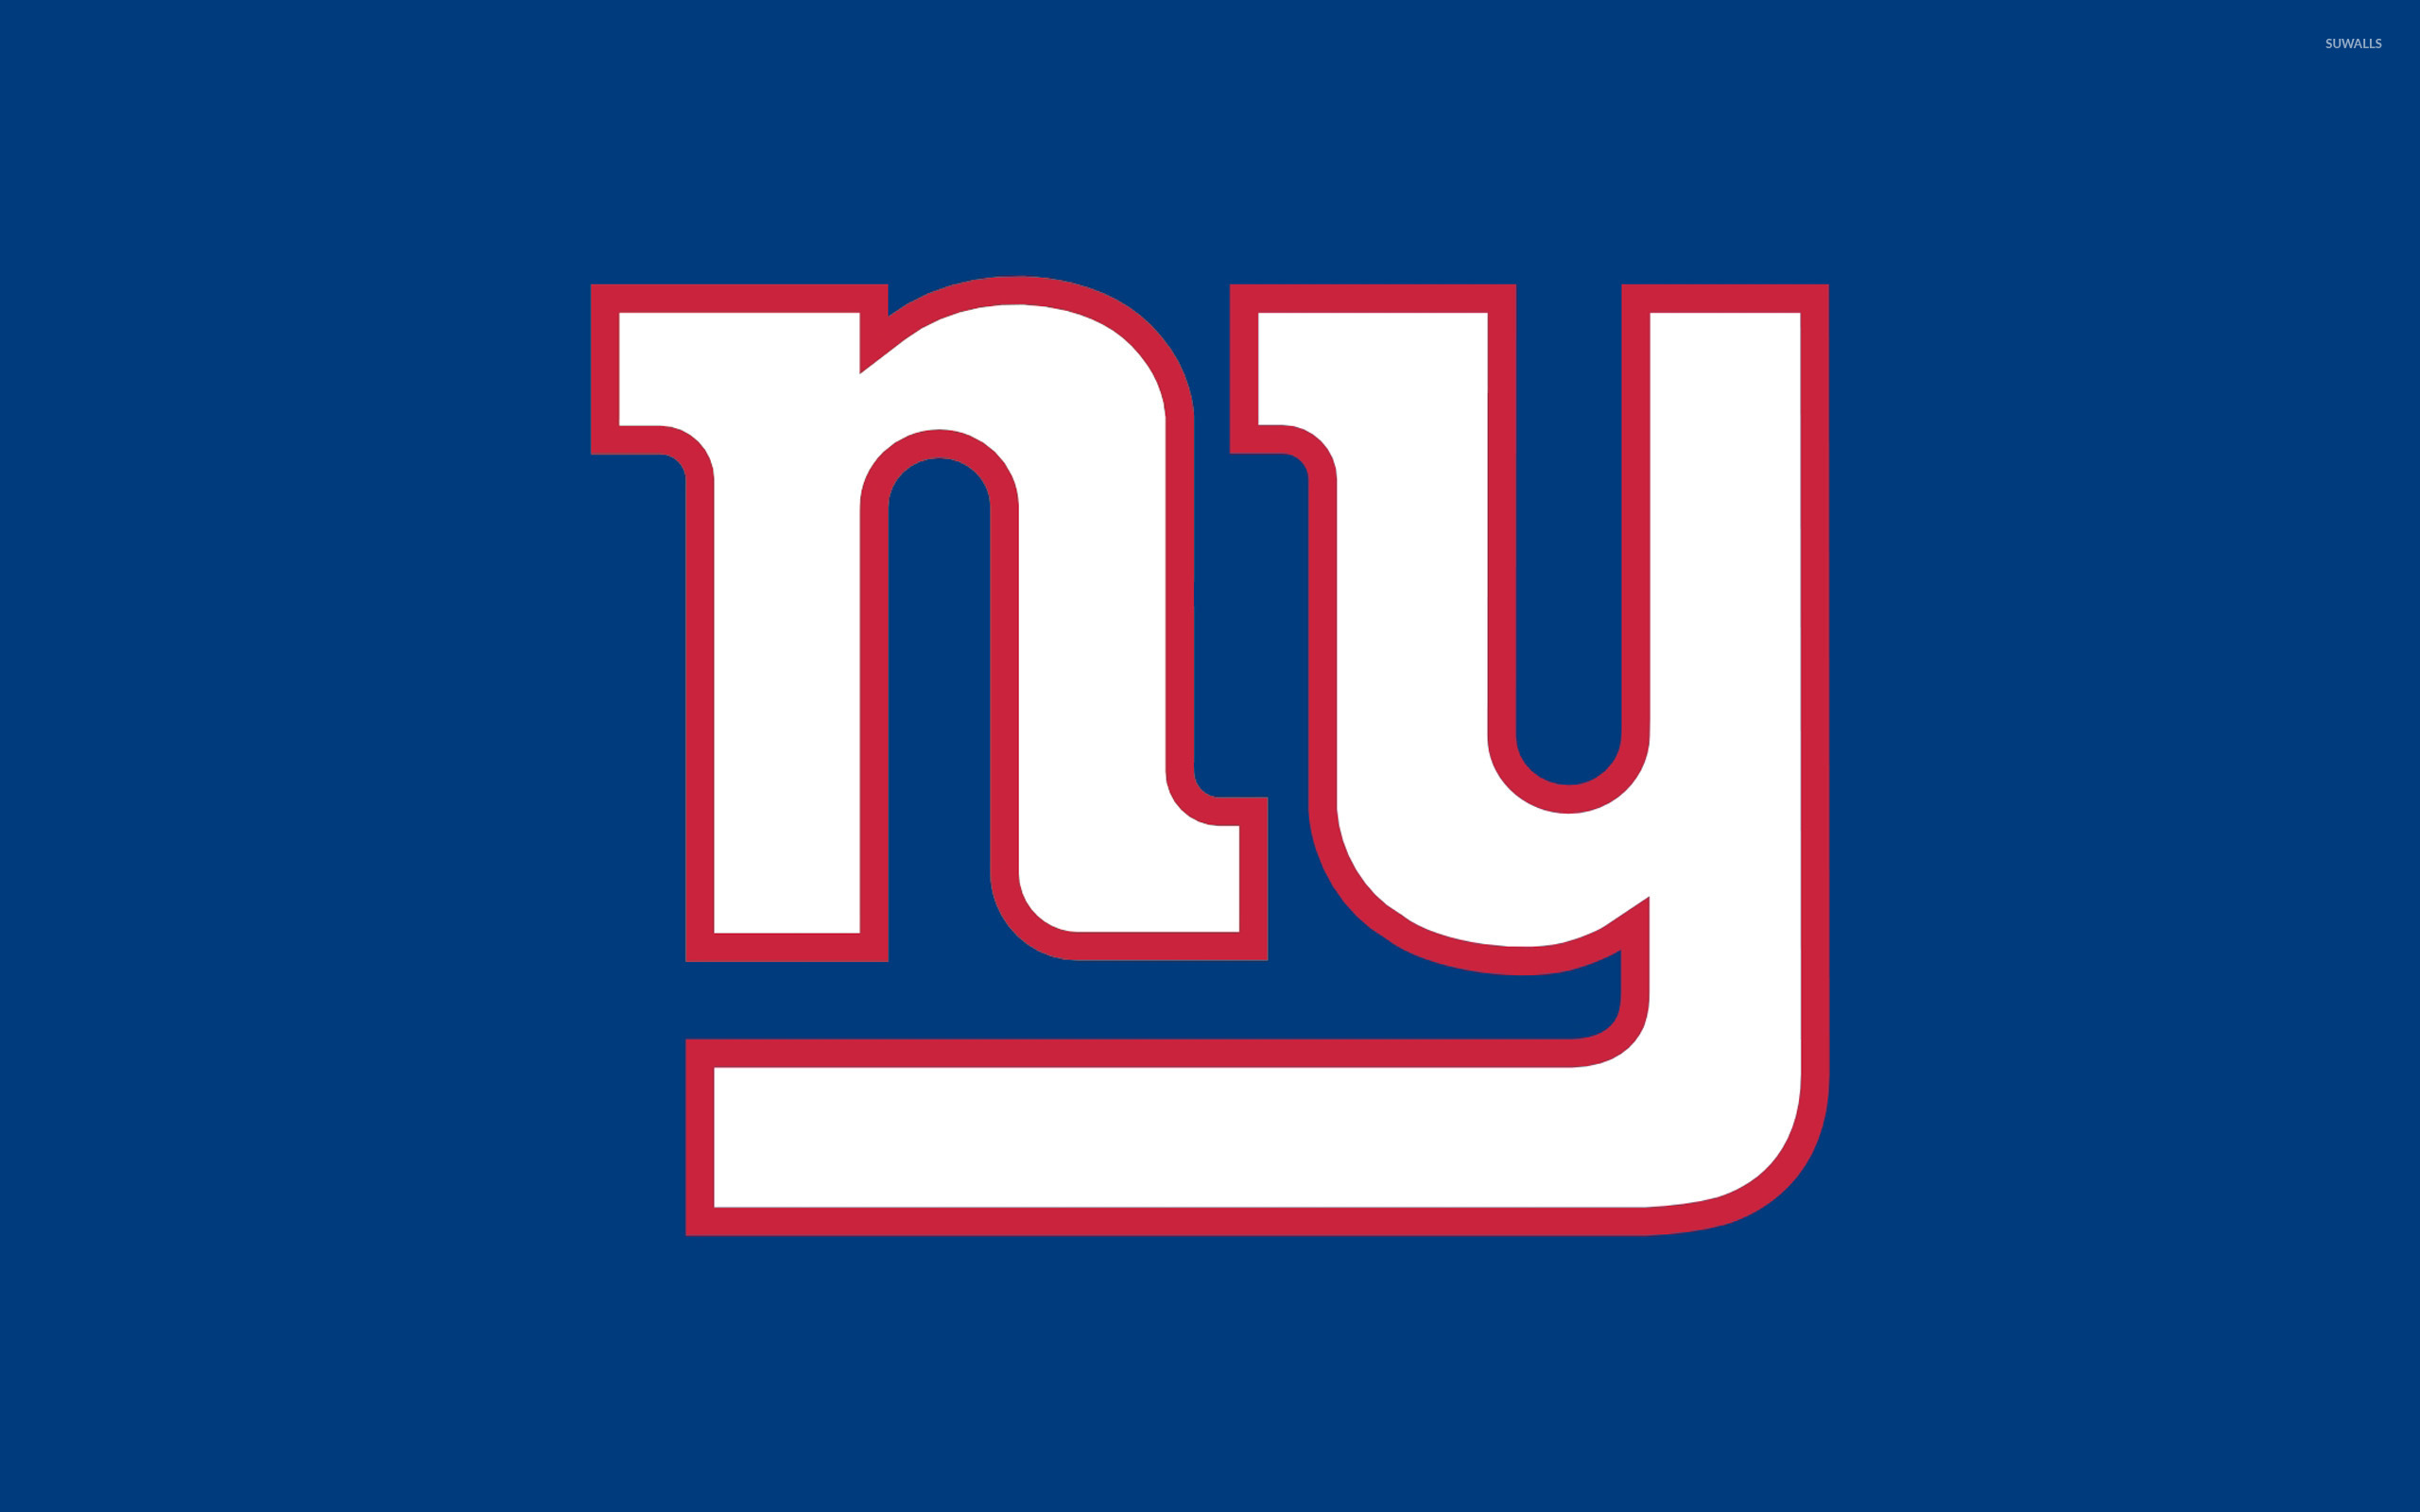 New York Giants logo wallpaper wallpaper